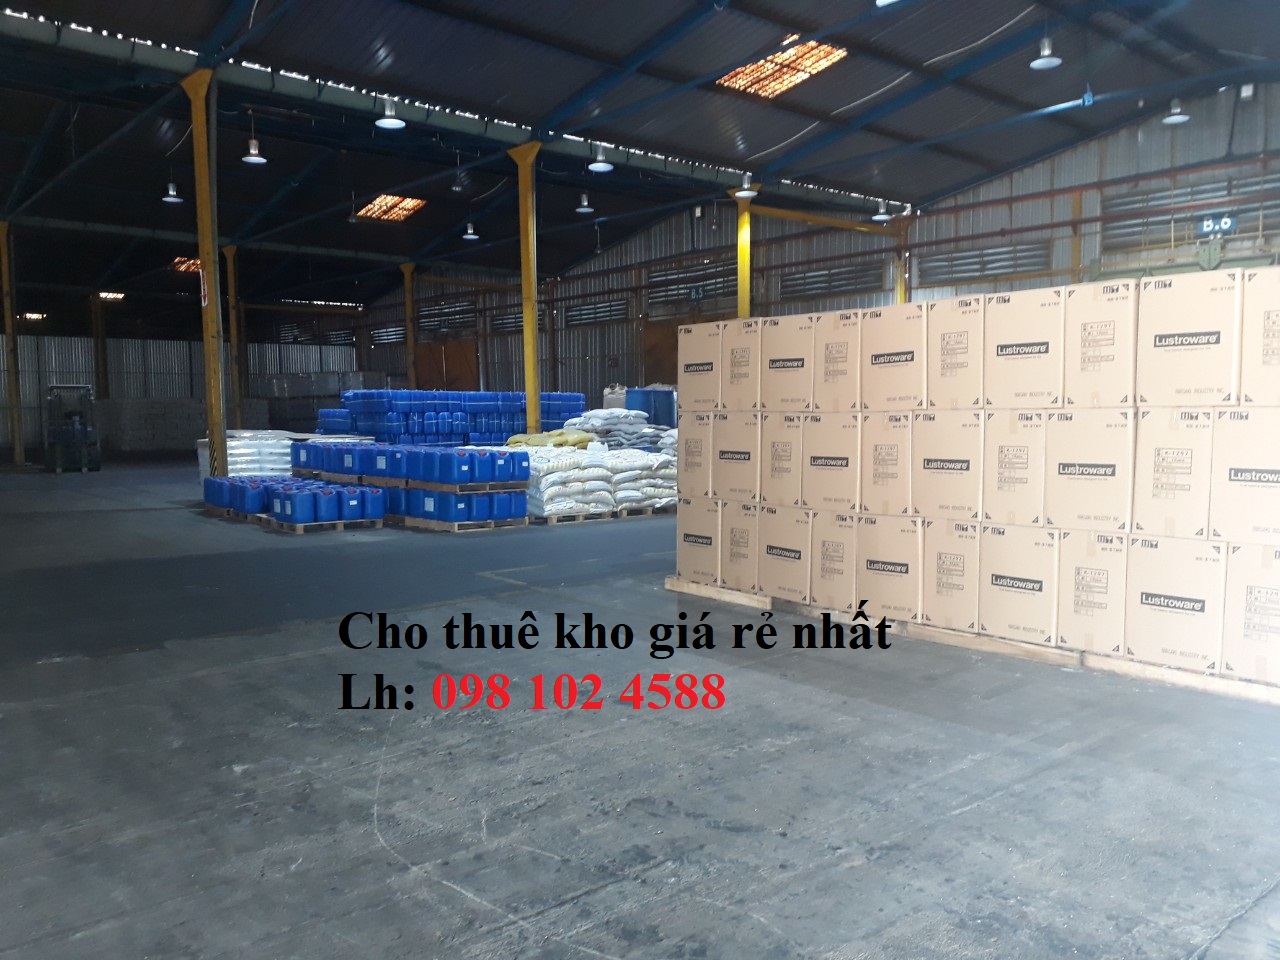 Cho thuê kho xưởng tại bình dương, kho chứa hàng tổng hợp, nằm trong KCN 10719829